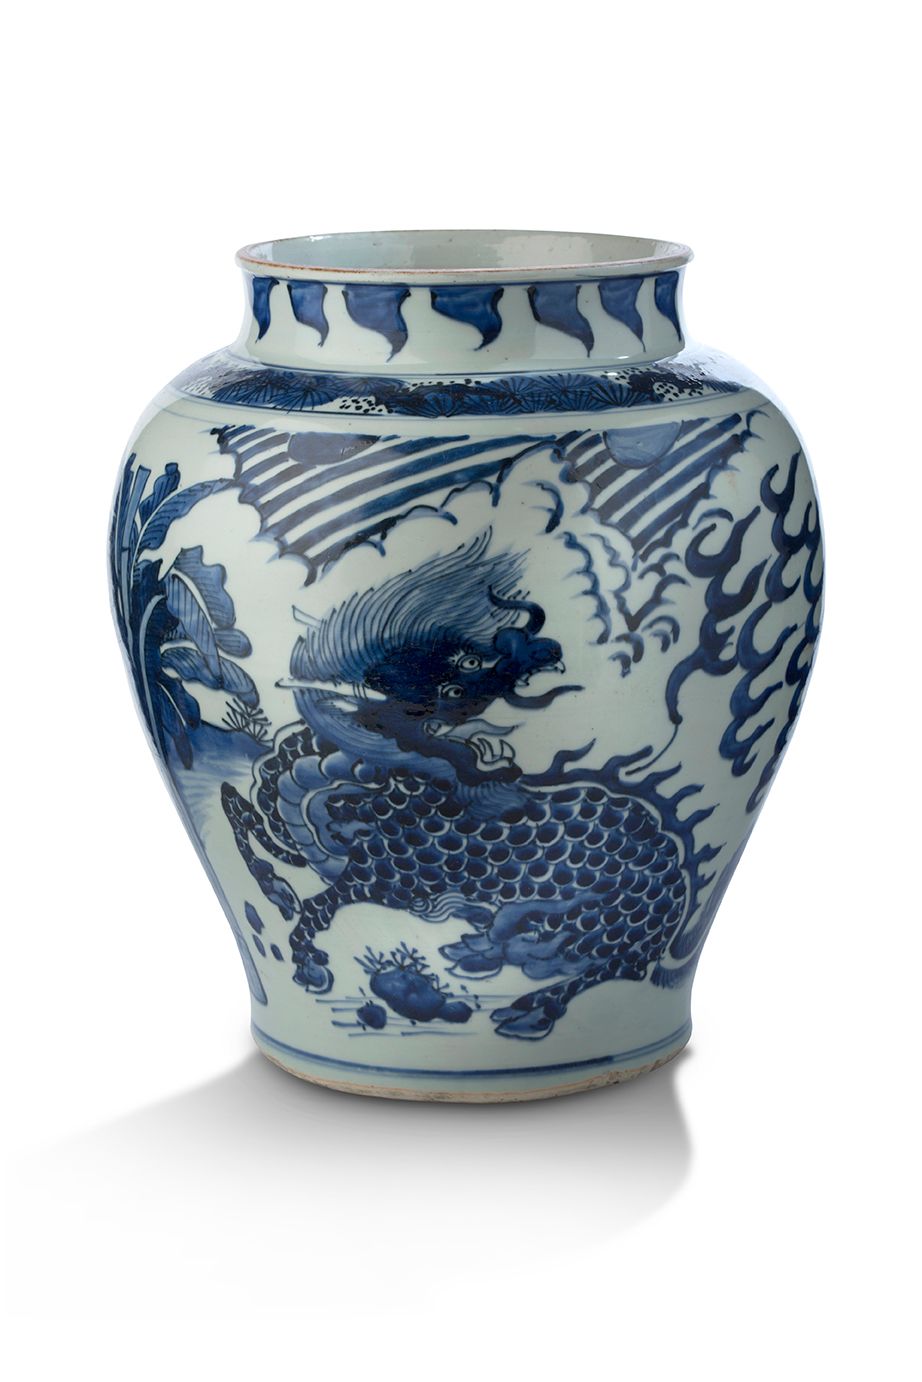 CHINE ÉPOQUE SHUNZHI (1643-1661) Importante jarre épaulée
En porcelaine bleu-bla&hellip;